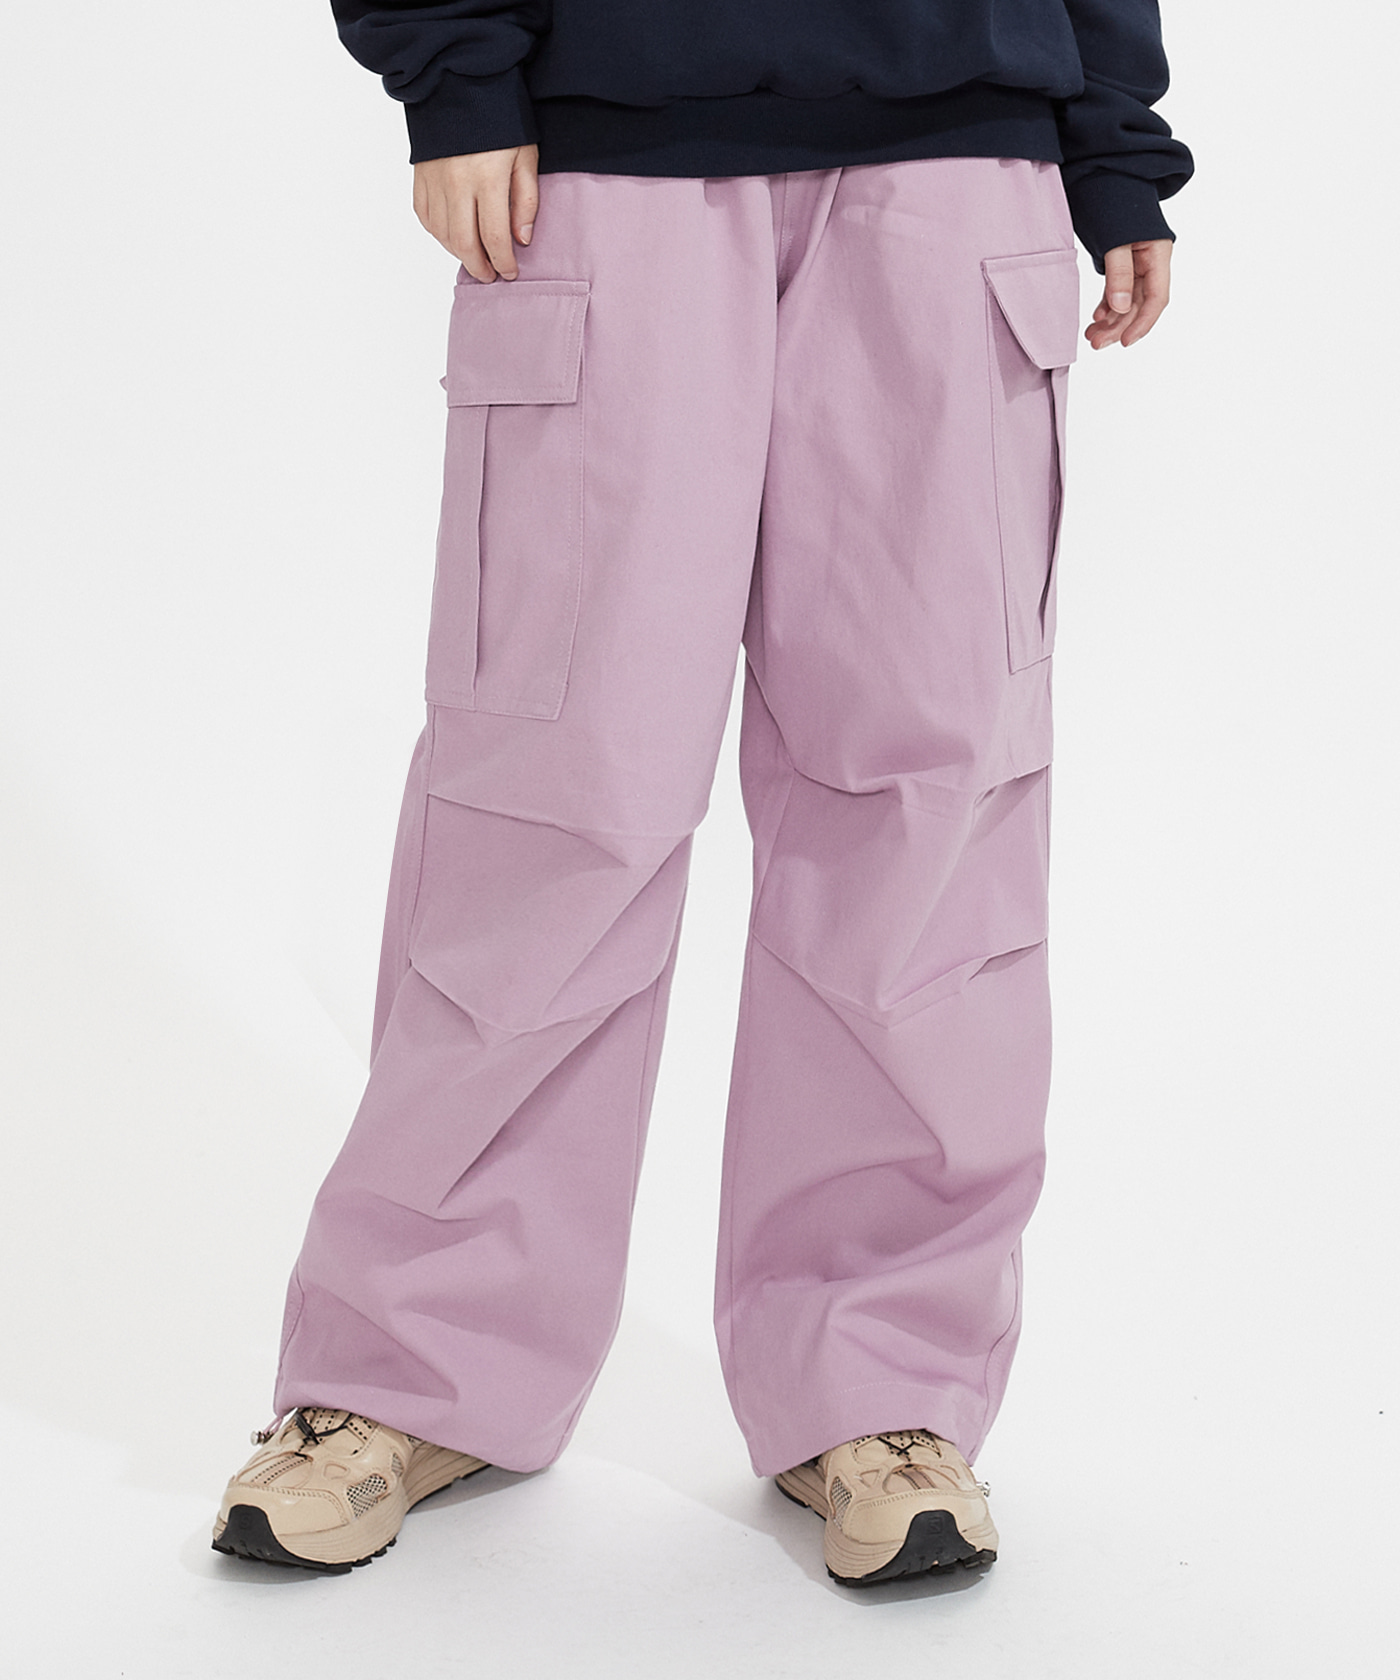 NOI720 pintuck cargo pants (pink)